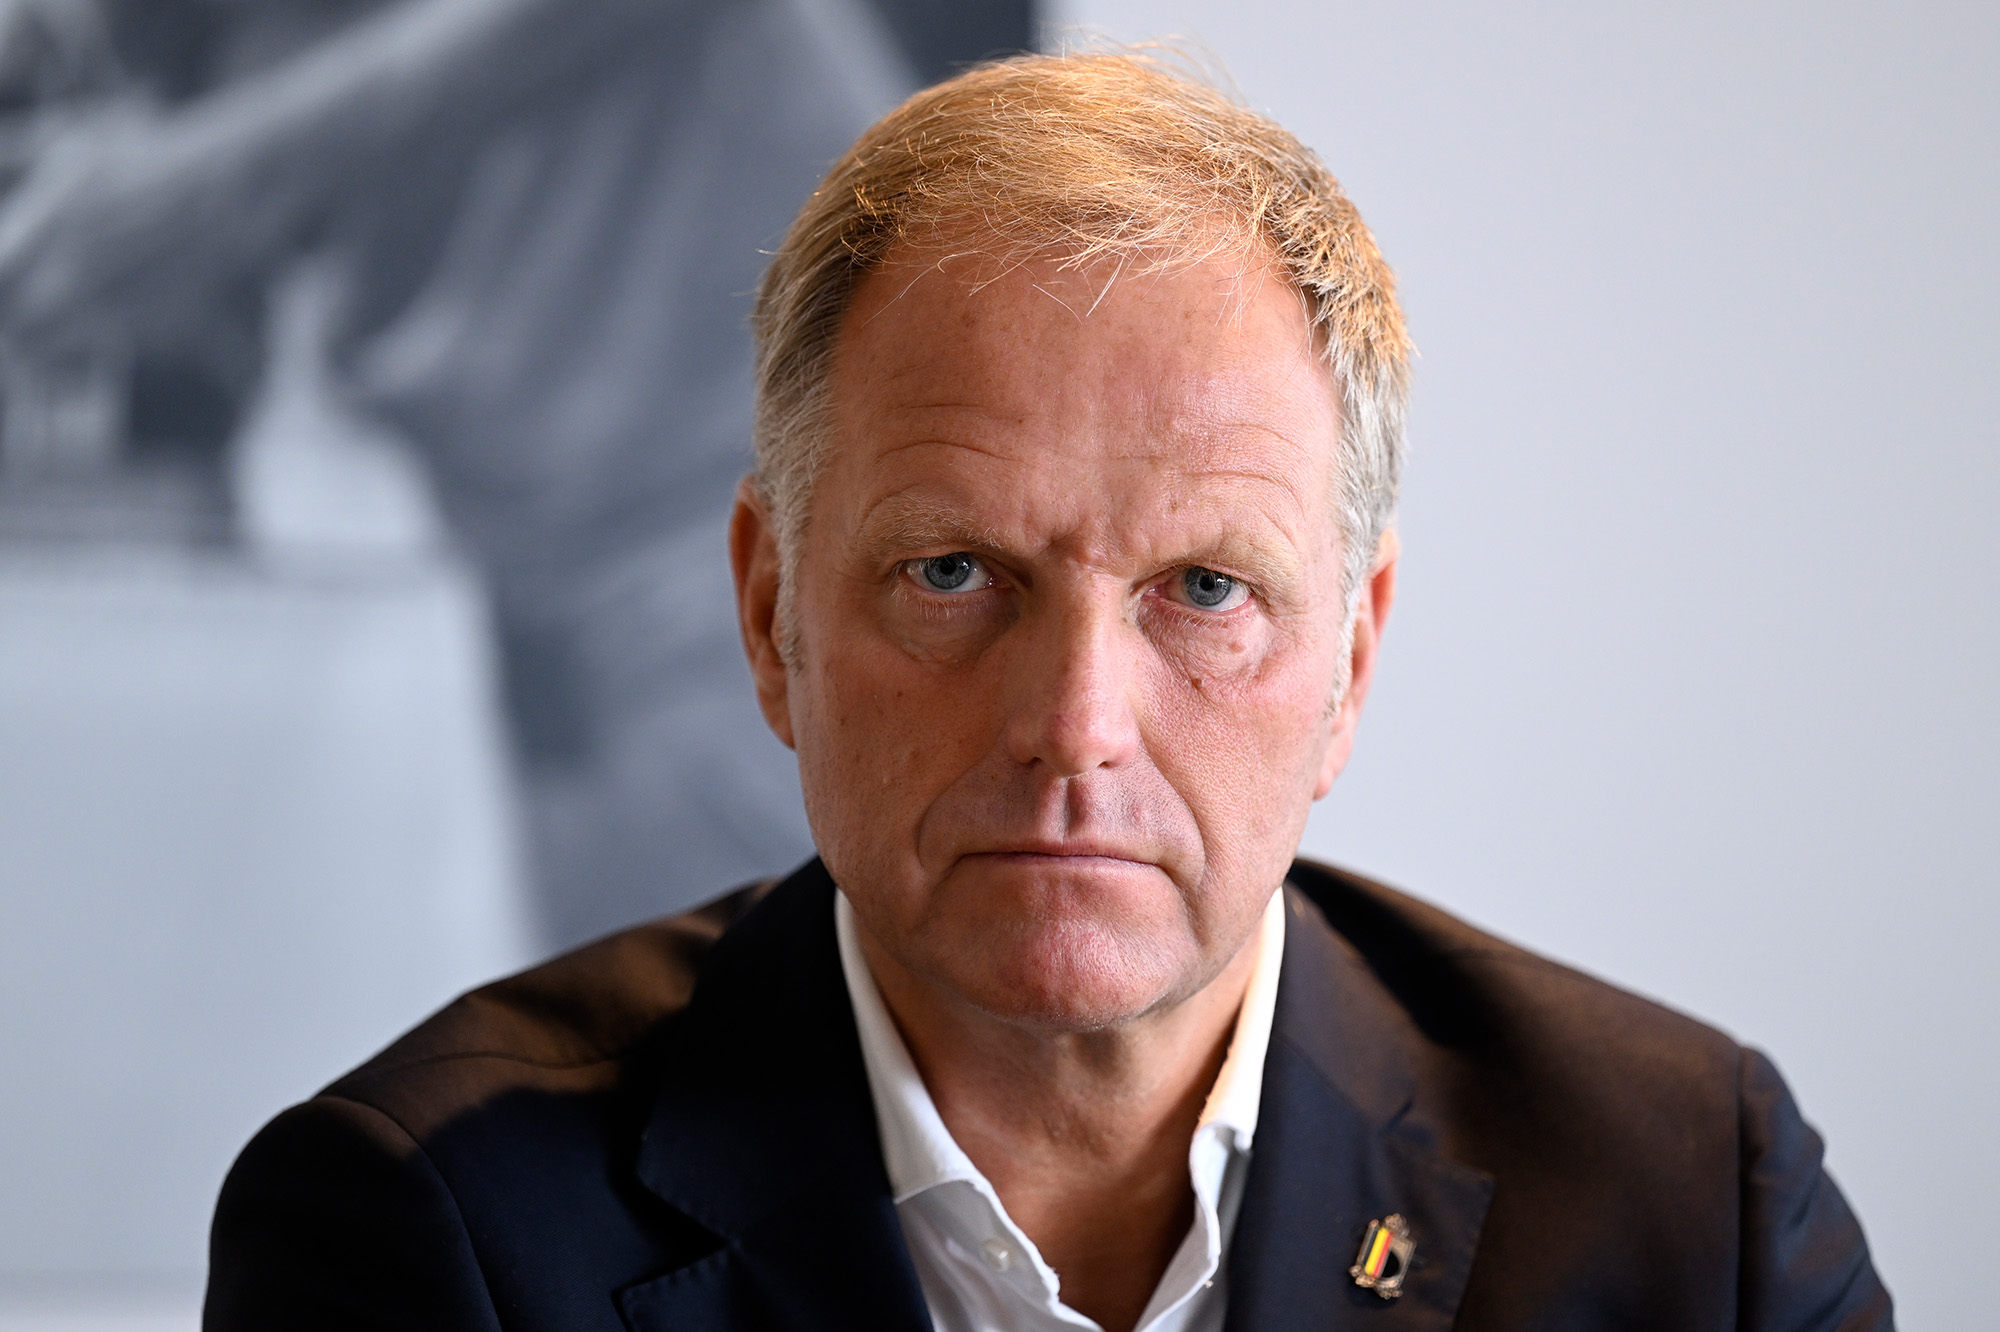 Peter Bossaert muss als Geschäftsführer des Belgischen Fußballverbands (URBSFA/KBVB) zurücktreten